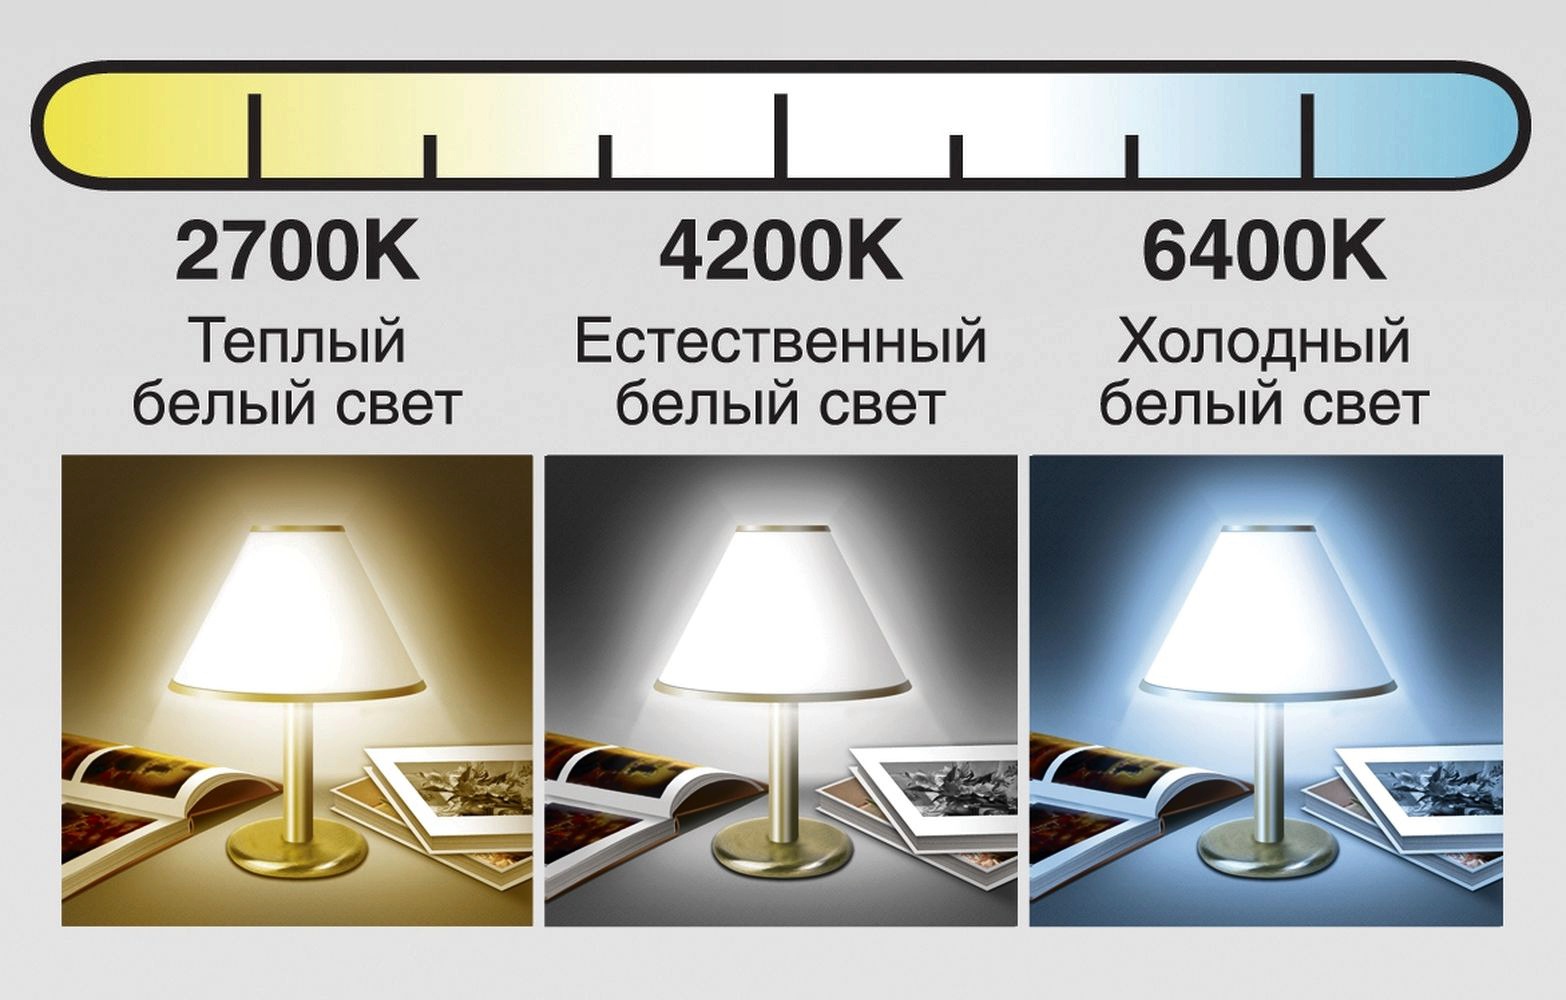 Поставь свет потеплее. Лампа на 4200 Кельвин. Цветовая температура светодиодных ламп. Теплый белый свет 2700к. Цветовая температура 4200.